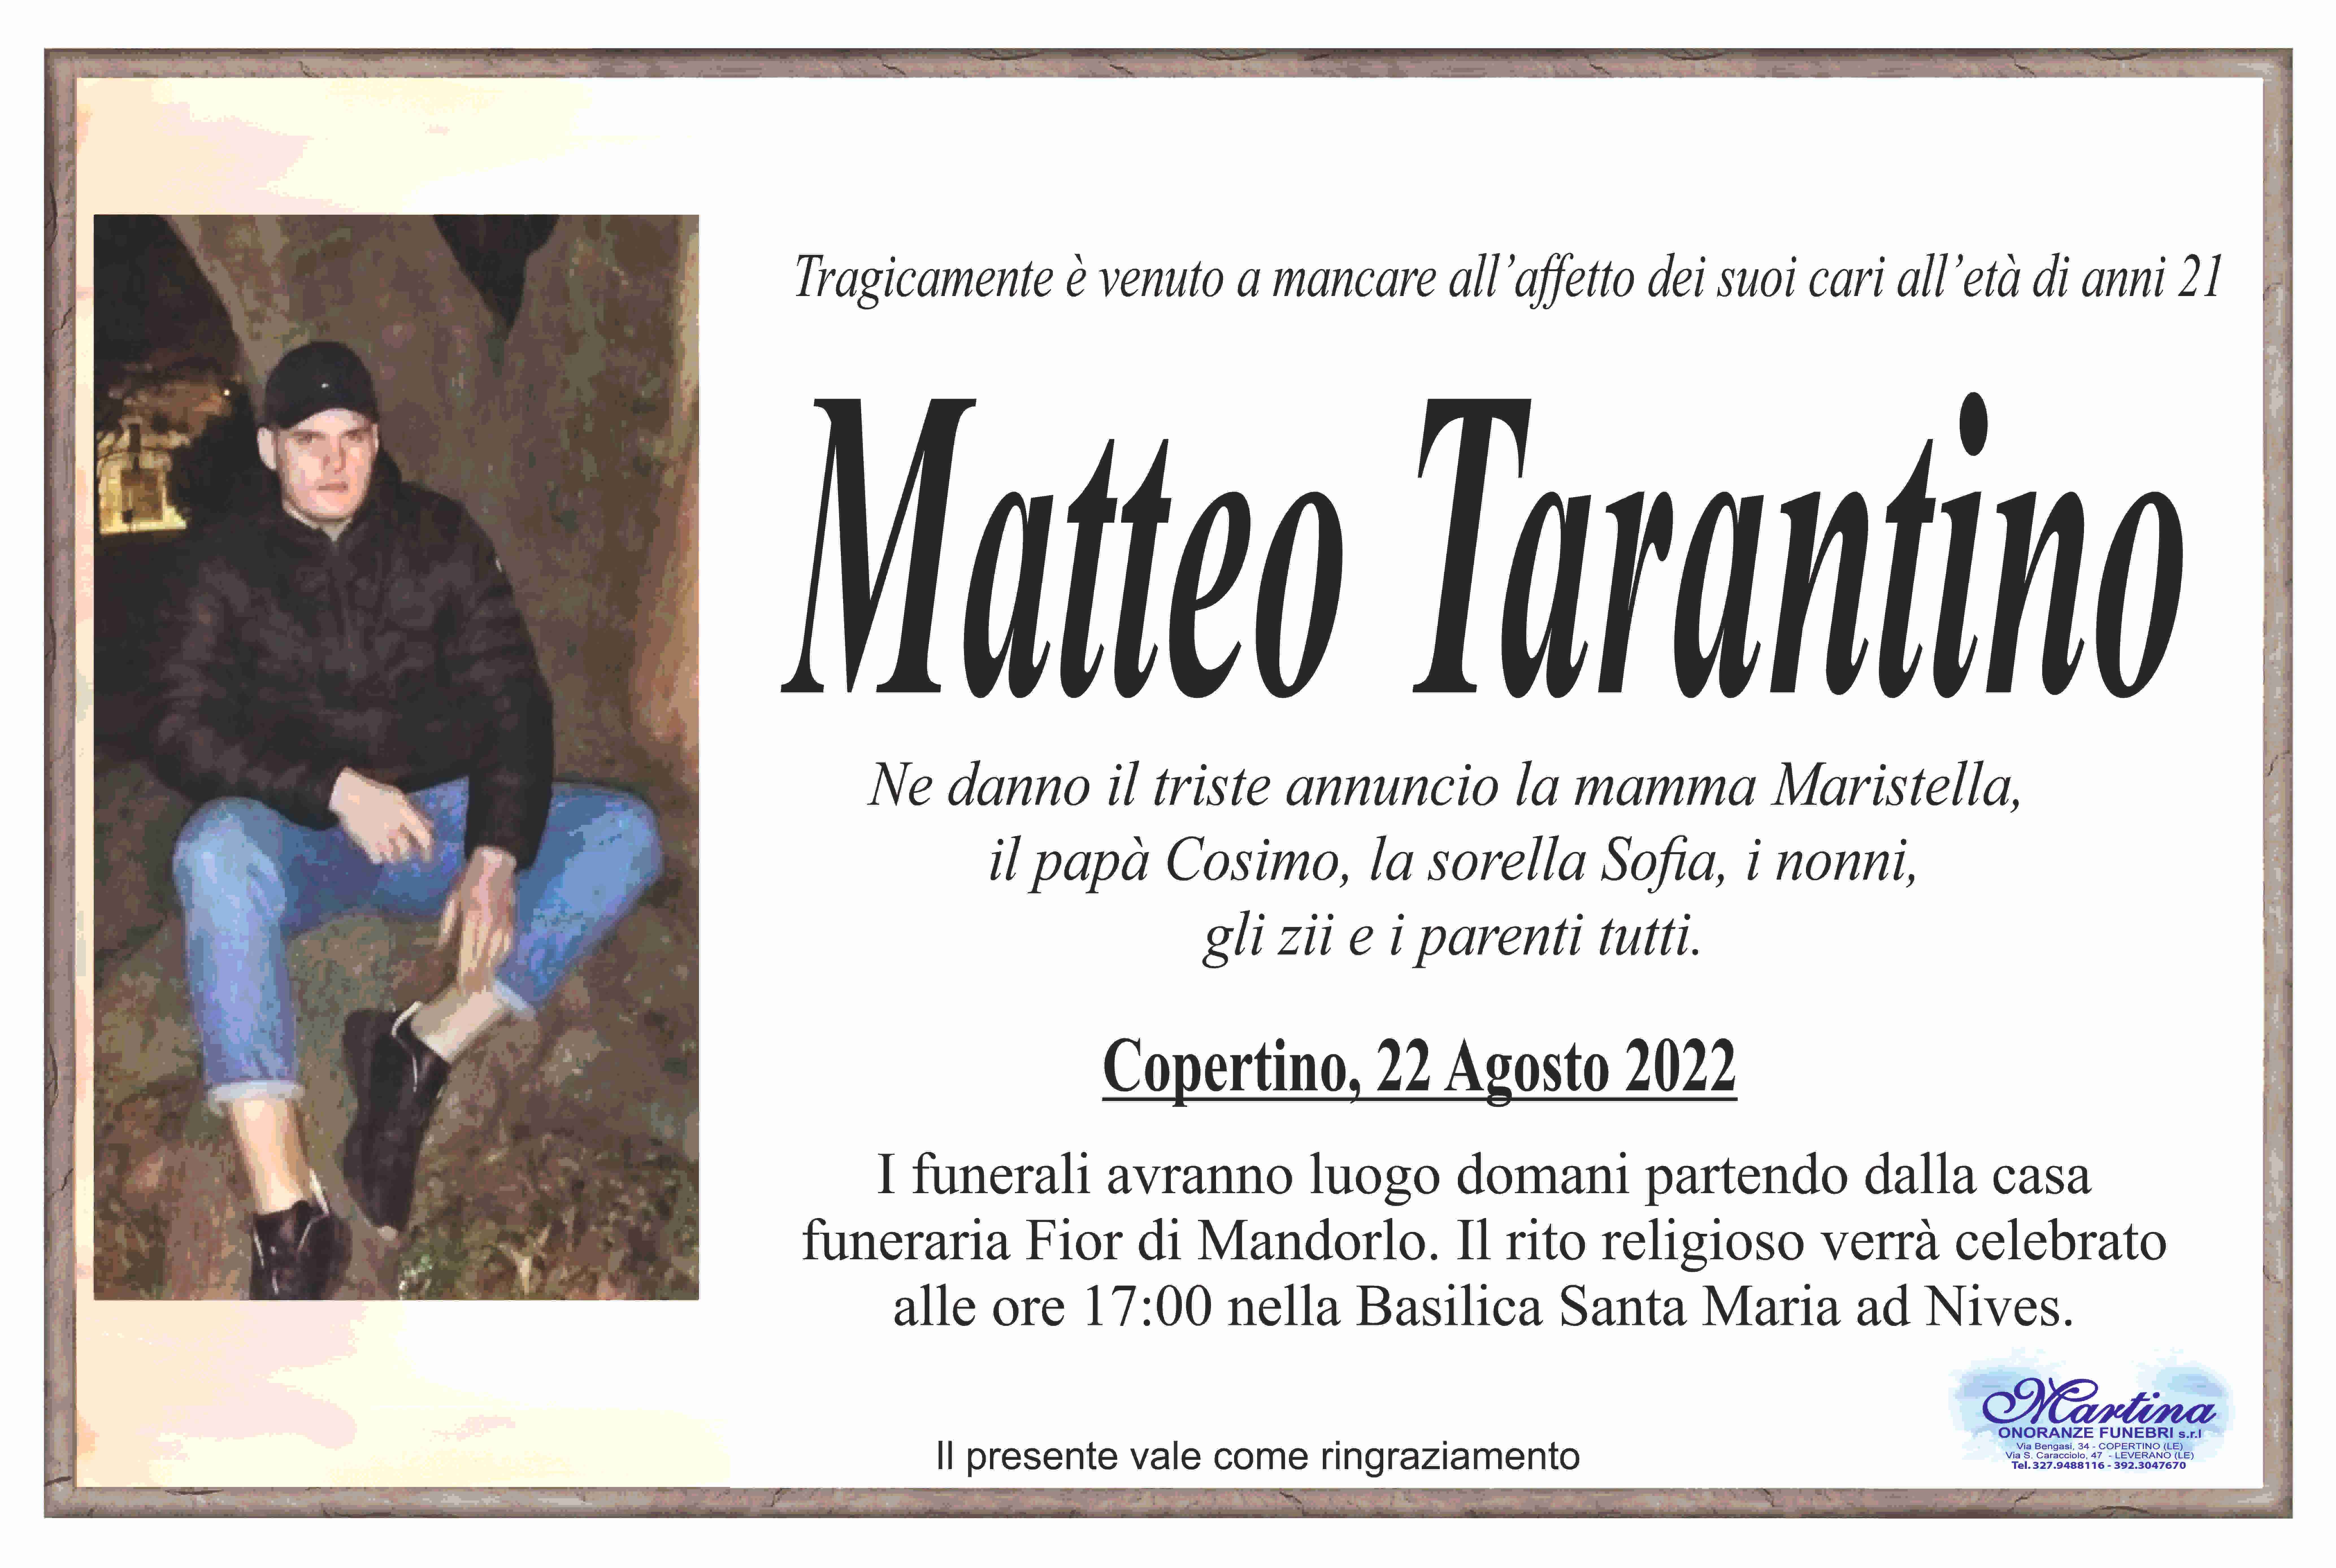 Matteo Tarantino